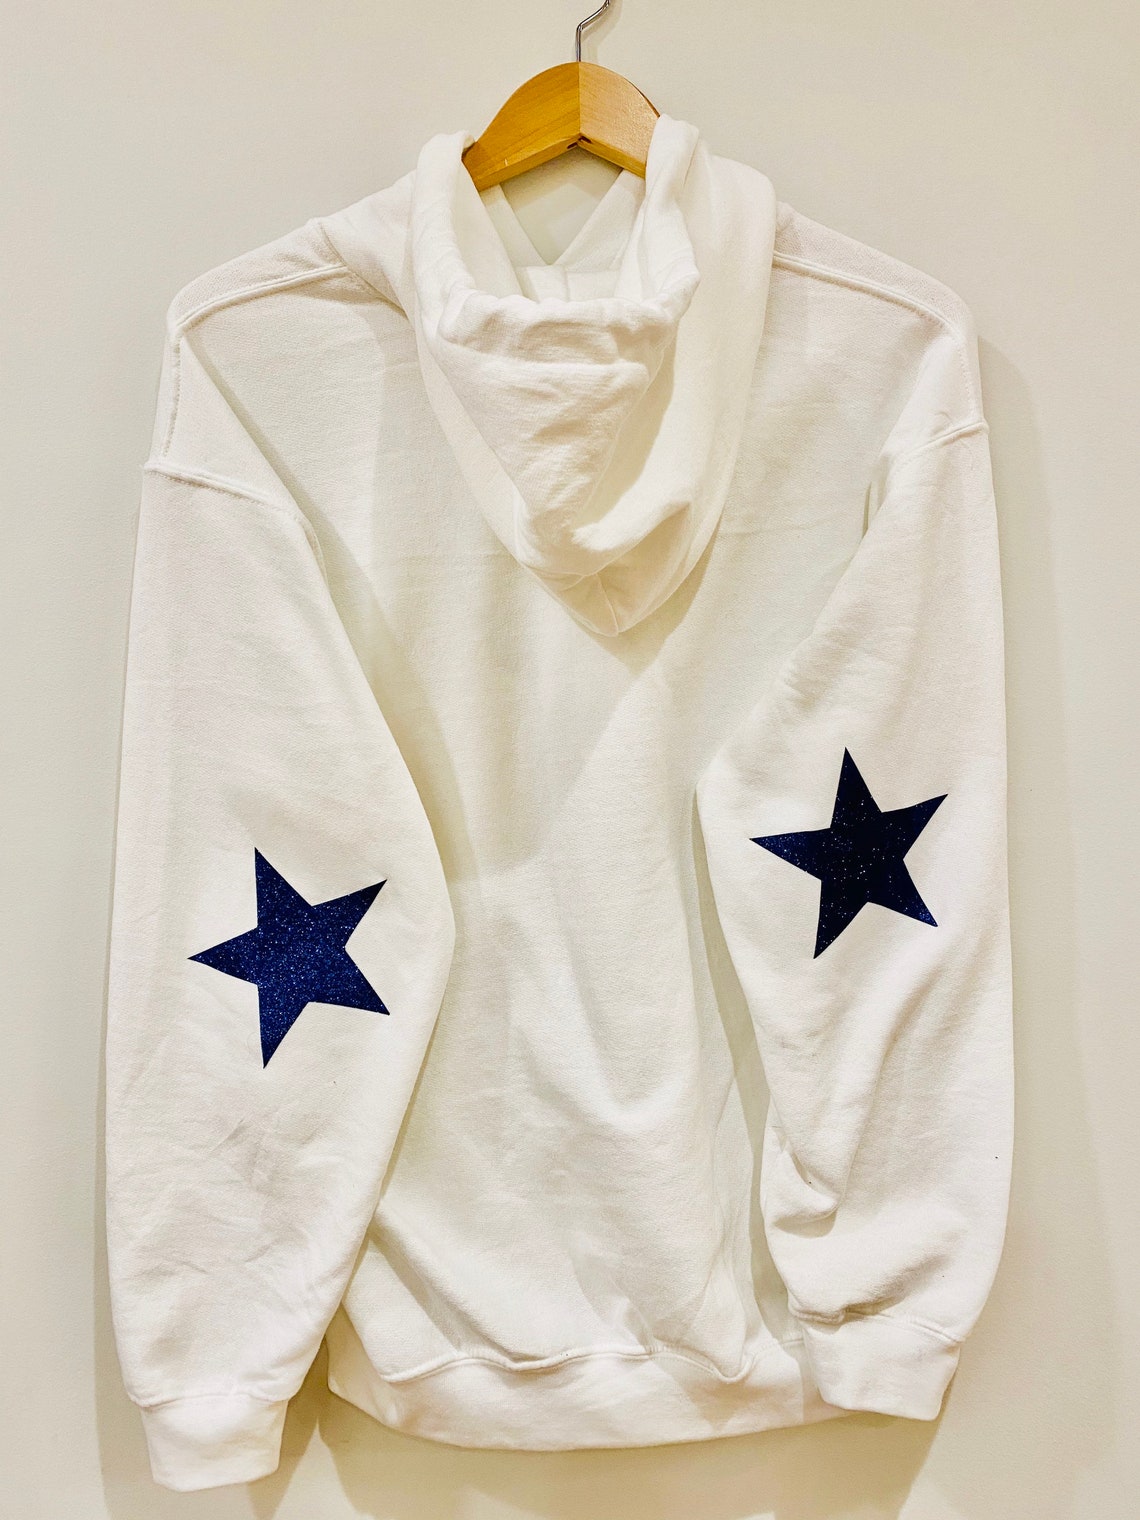 Hoodie with stars / white sweatshirt / glitter blue stars | Etsy